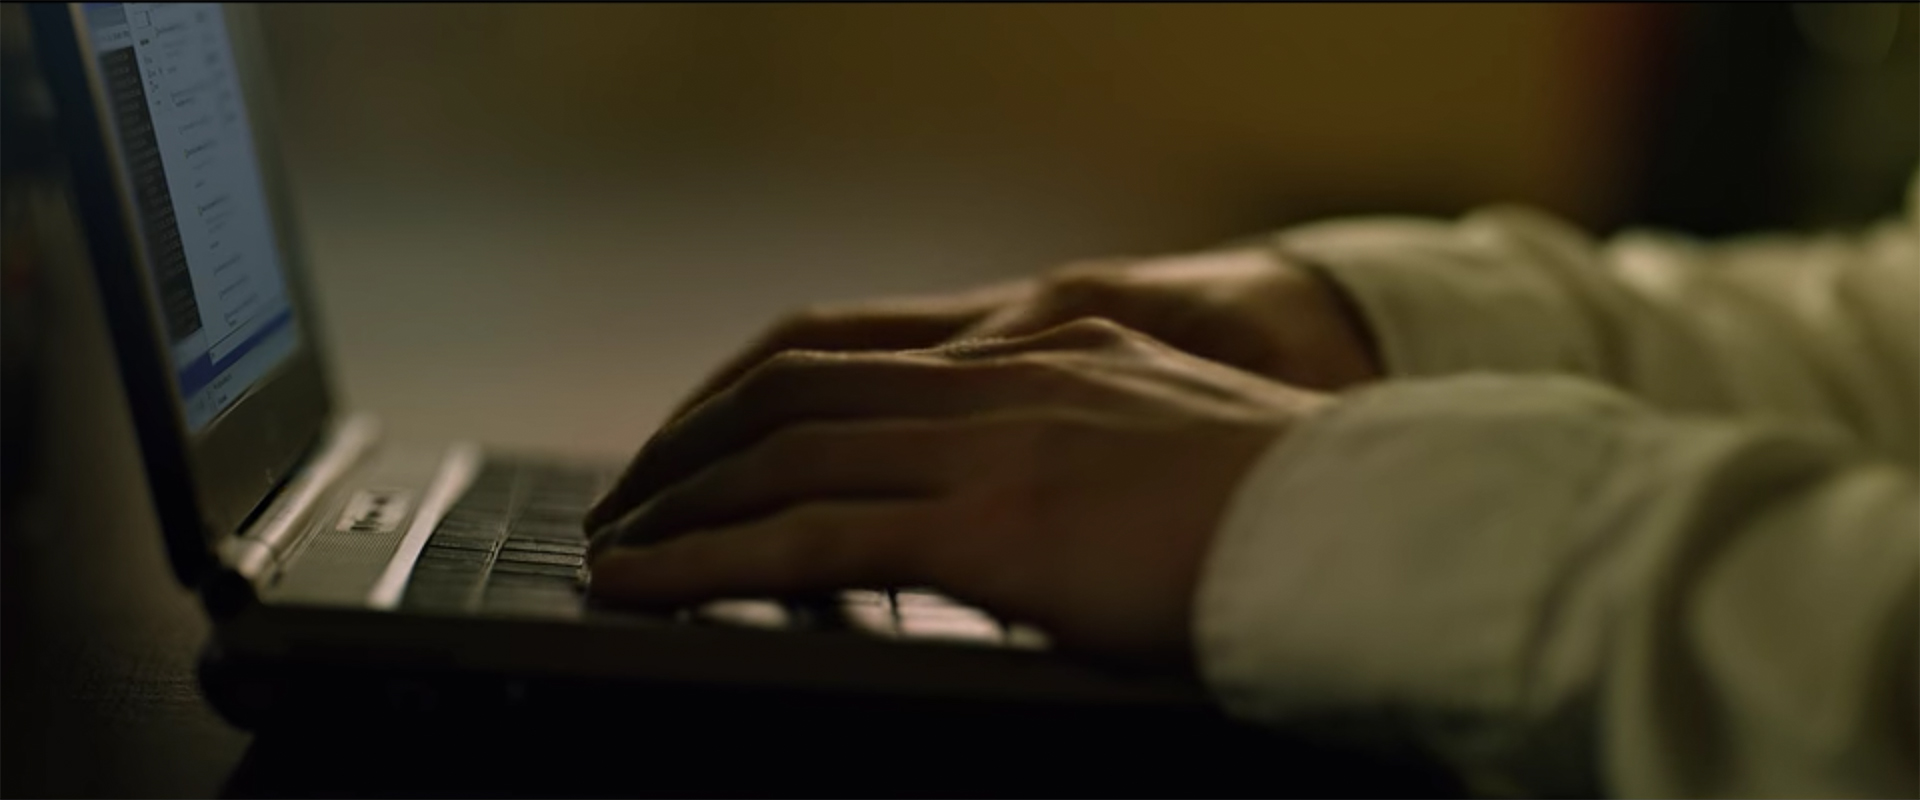 Zucks Finger berühren die Tastatur seines Laptops